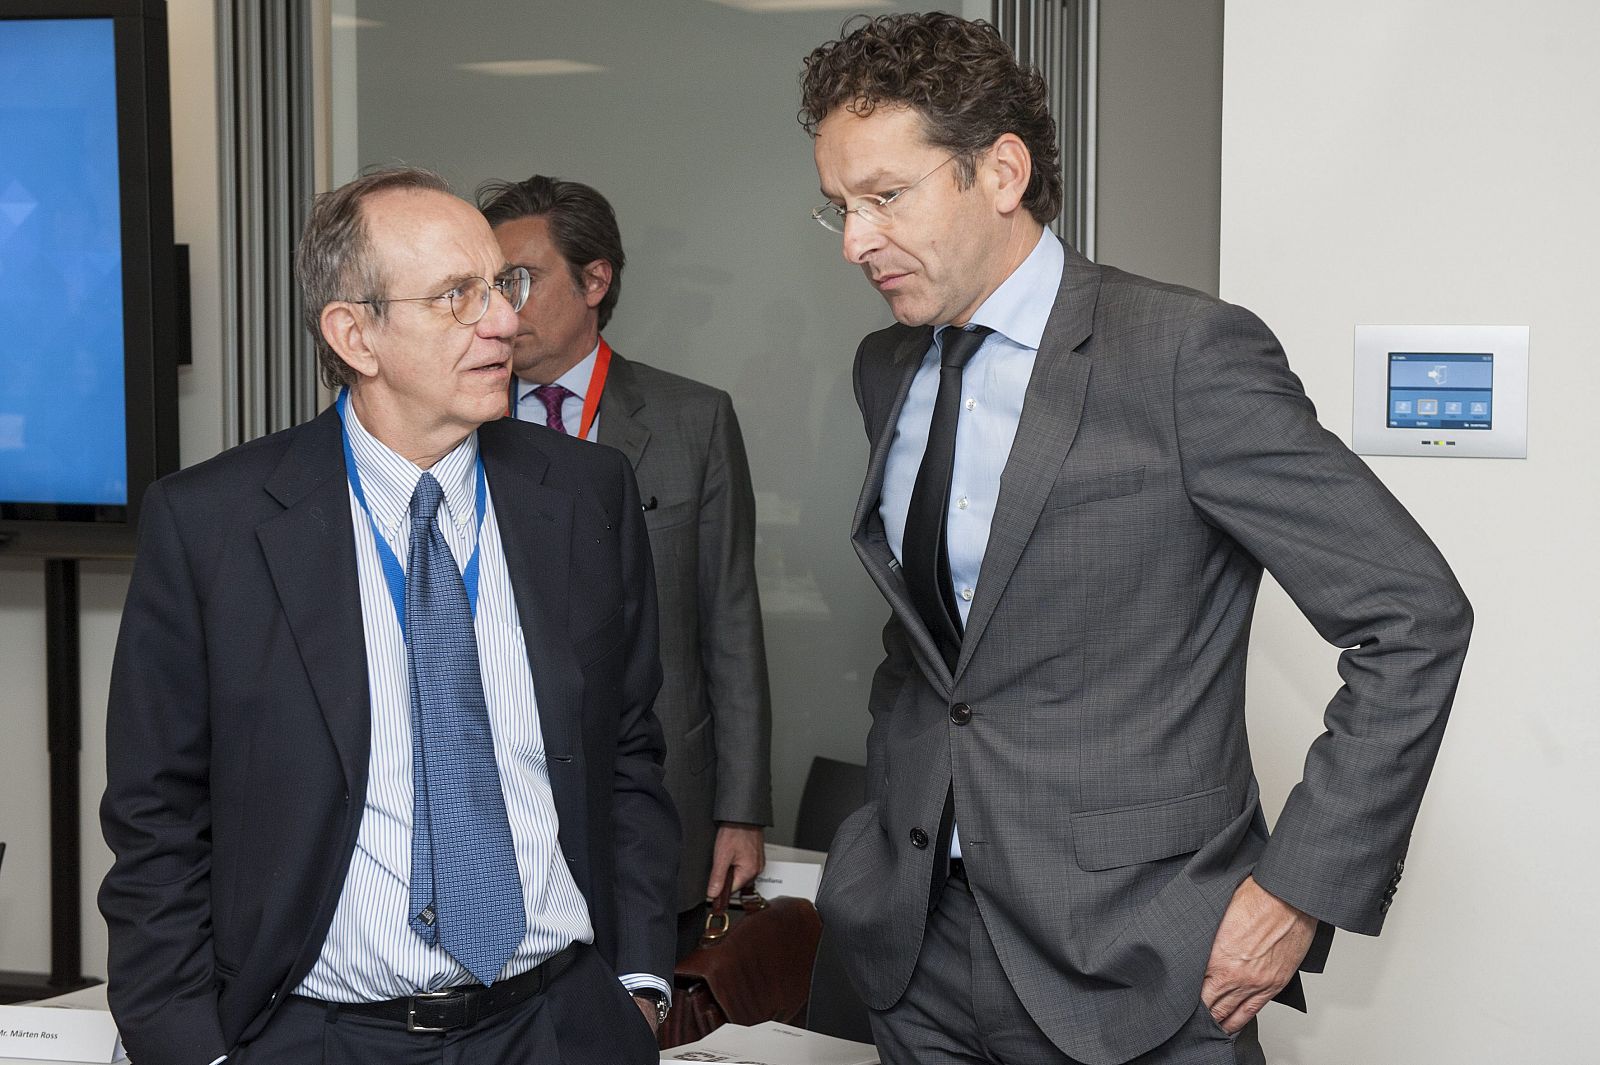 El ministro italiano de Finanzas, Pier Carlo Padoan, conversa con el presidente del Eurogrupo, Jeroen Dijsselbloem